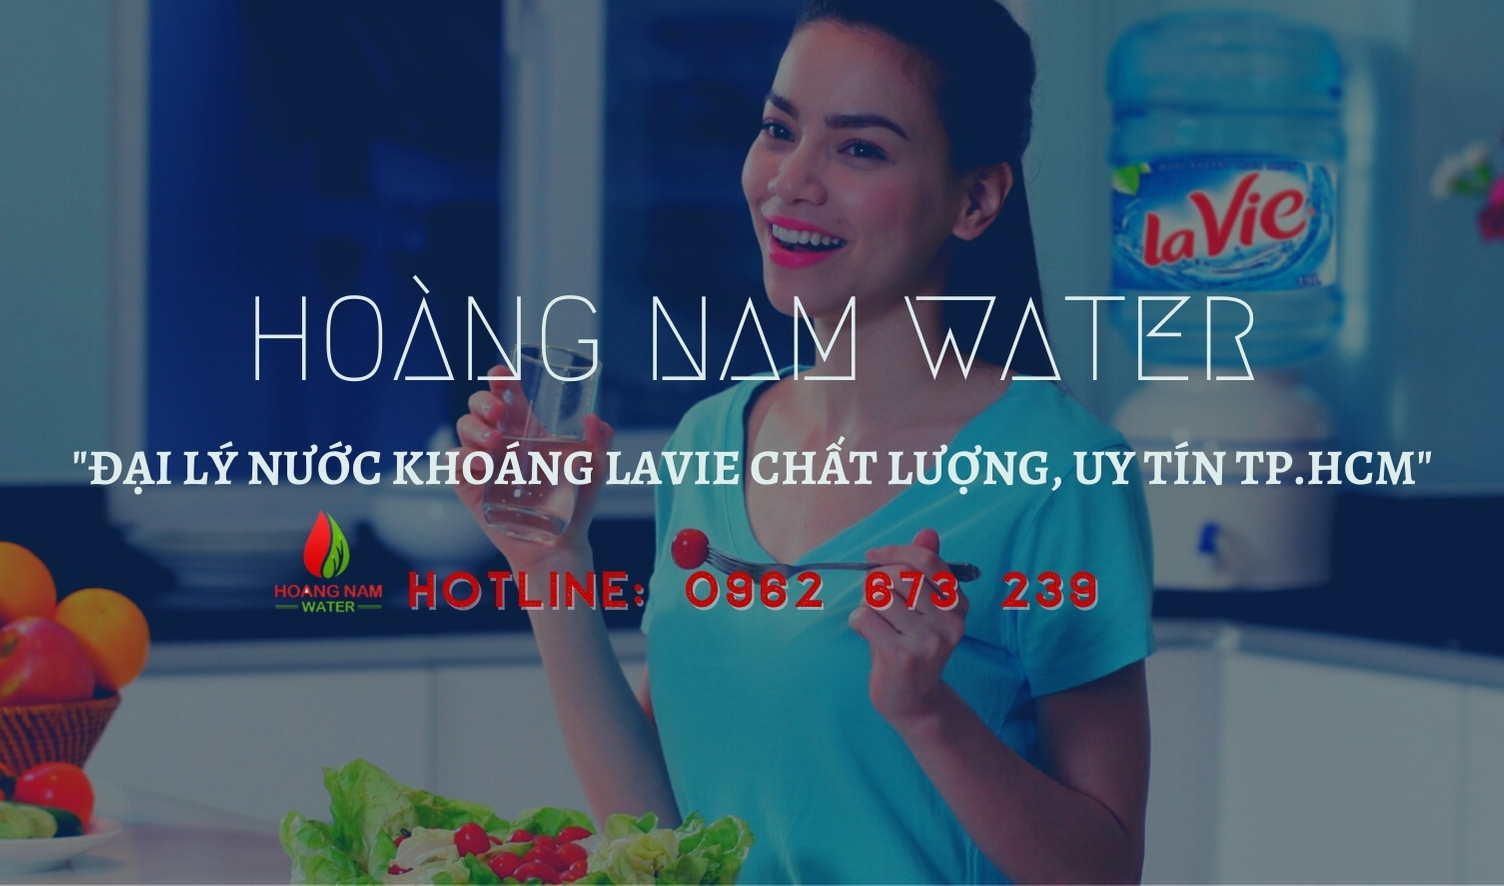 Hoàng Nam water